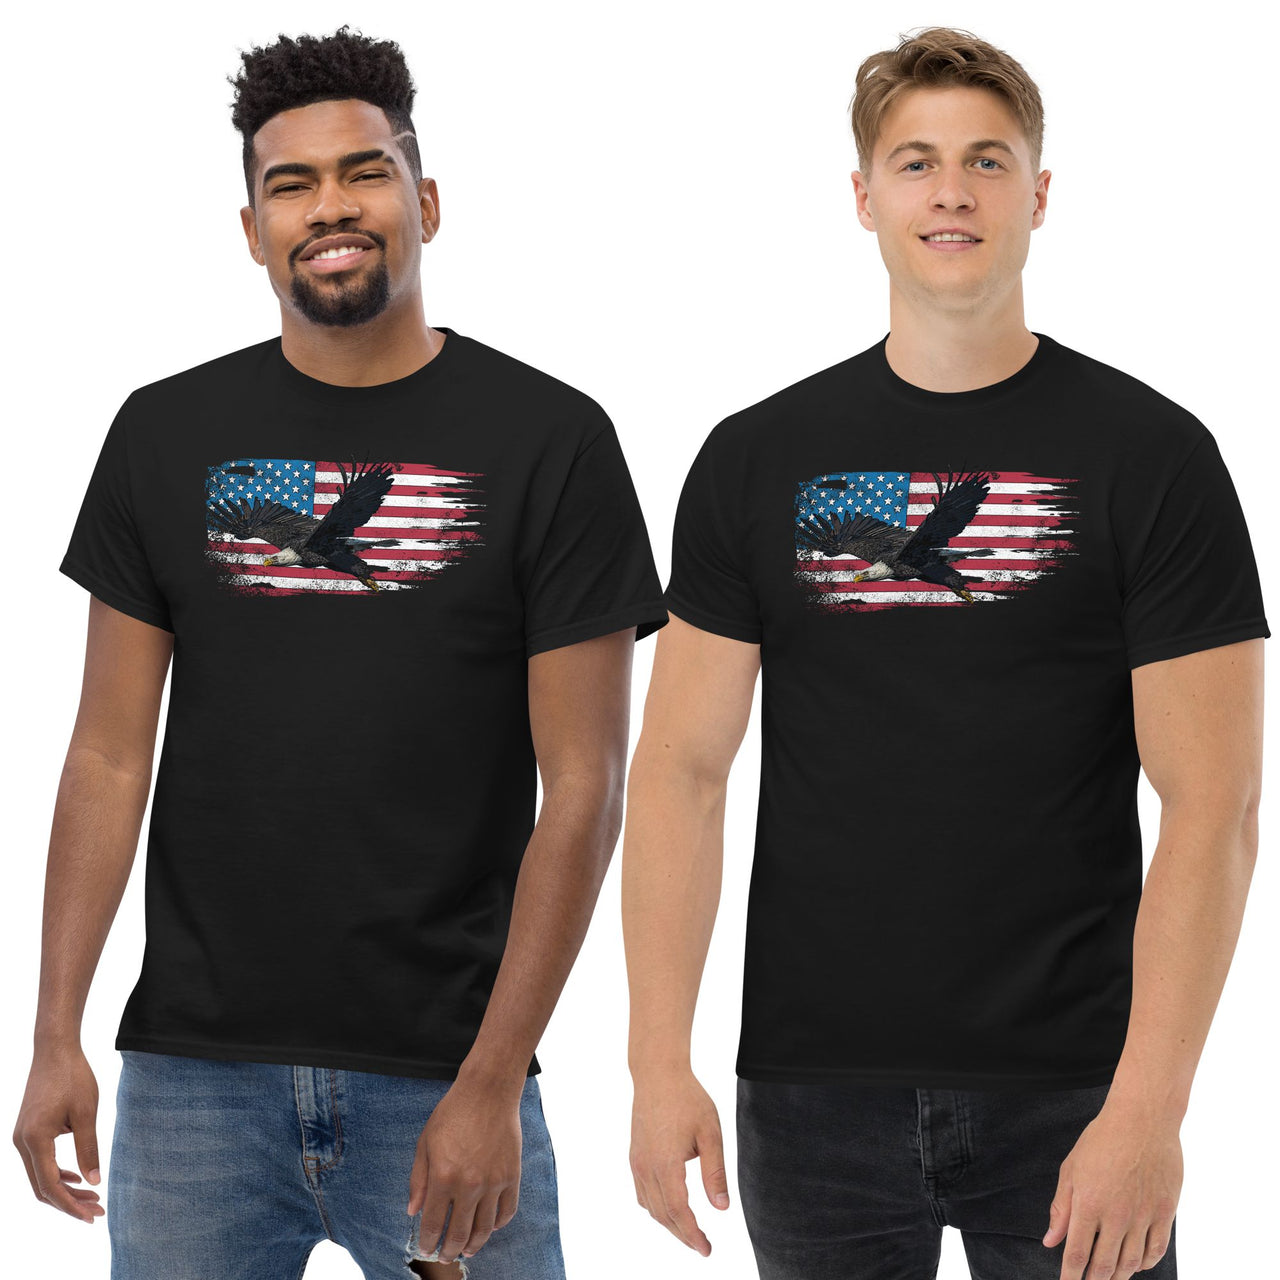 Patriotic American Flag Bald Eagle T-Shirt modeled in black